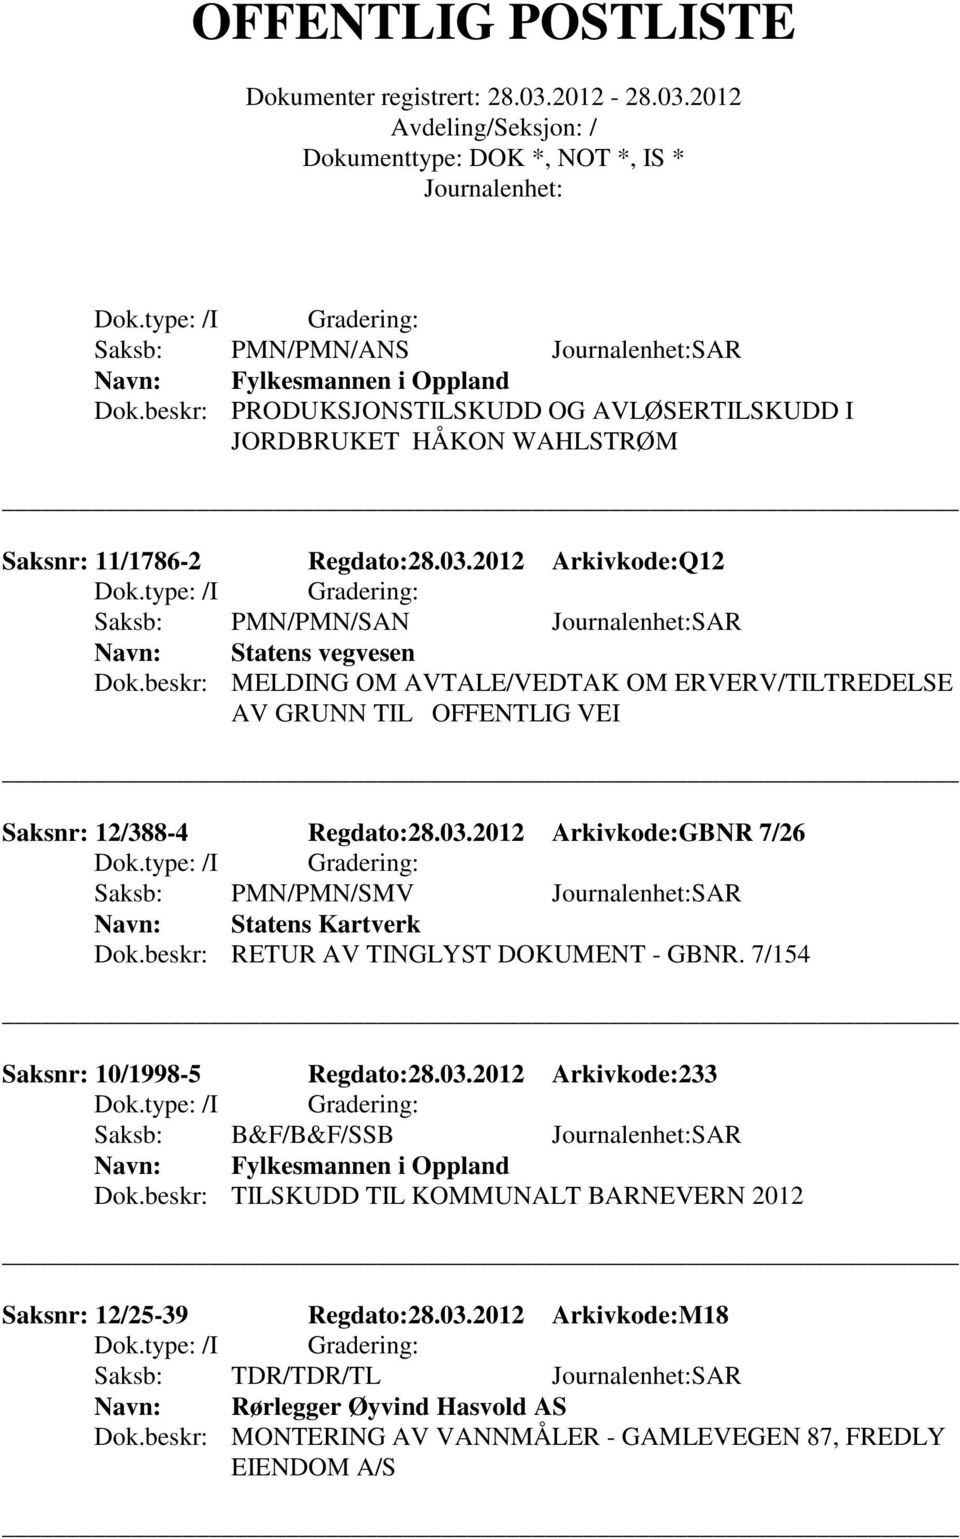 2012 Arkivkode:GBNR 7/26 Saksb: PMN/PMN/SMV SAR Statens Kartverk Dok.beskr: RETUR AV TINGLYST DOKUMENT - GBNR. 7/154 Saksnr: 10/1998-5 Regdato:28.03.